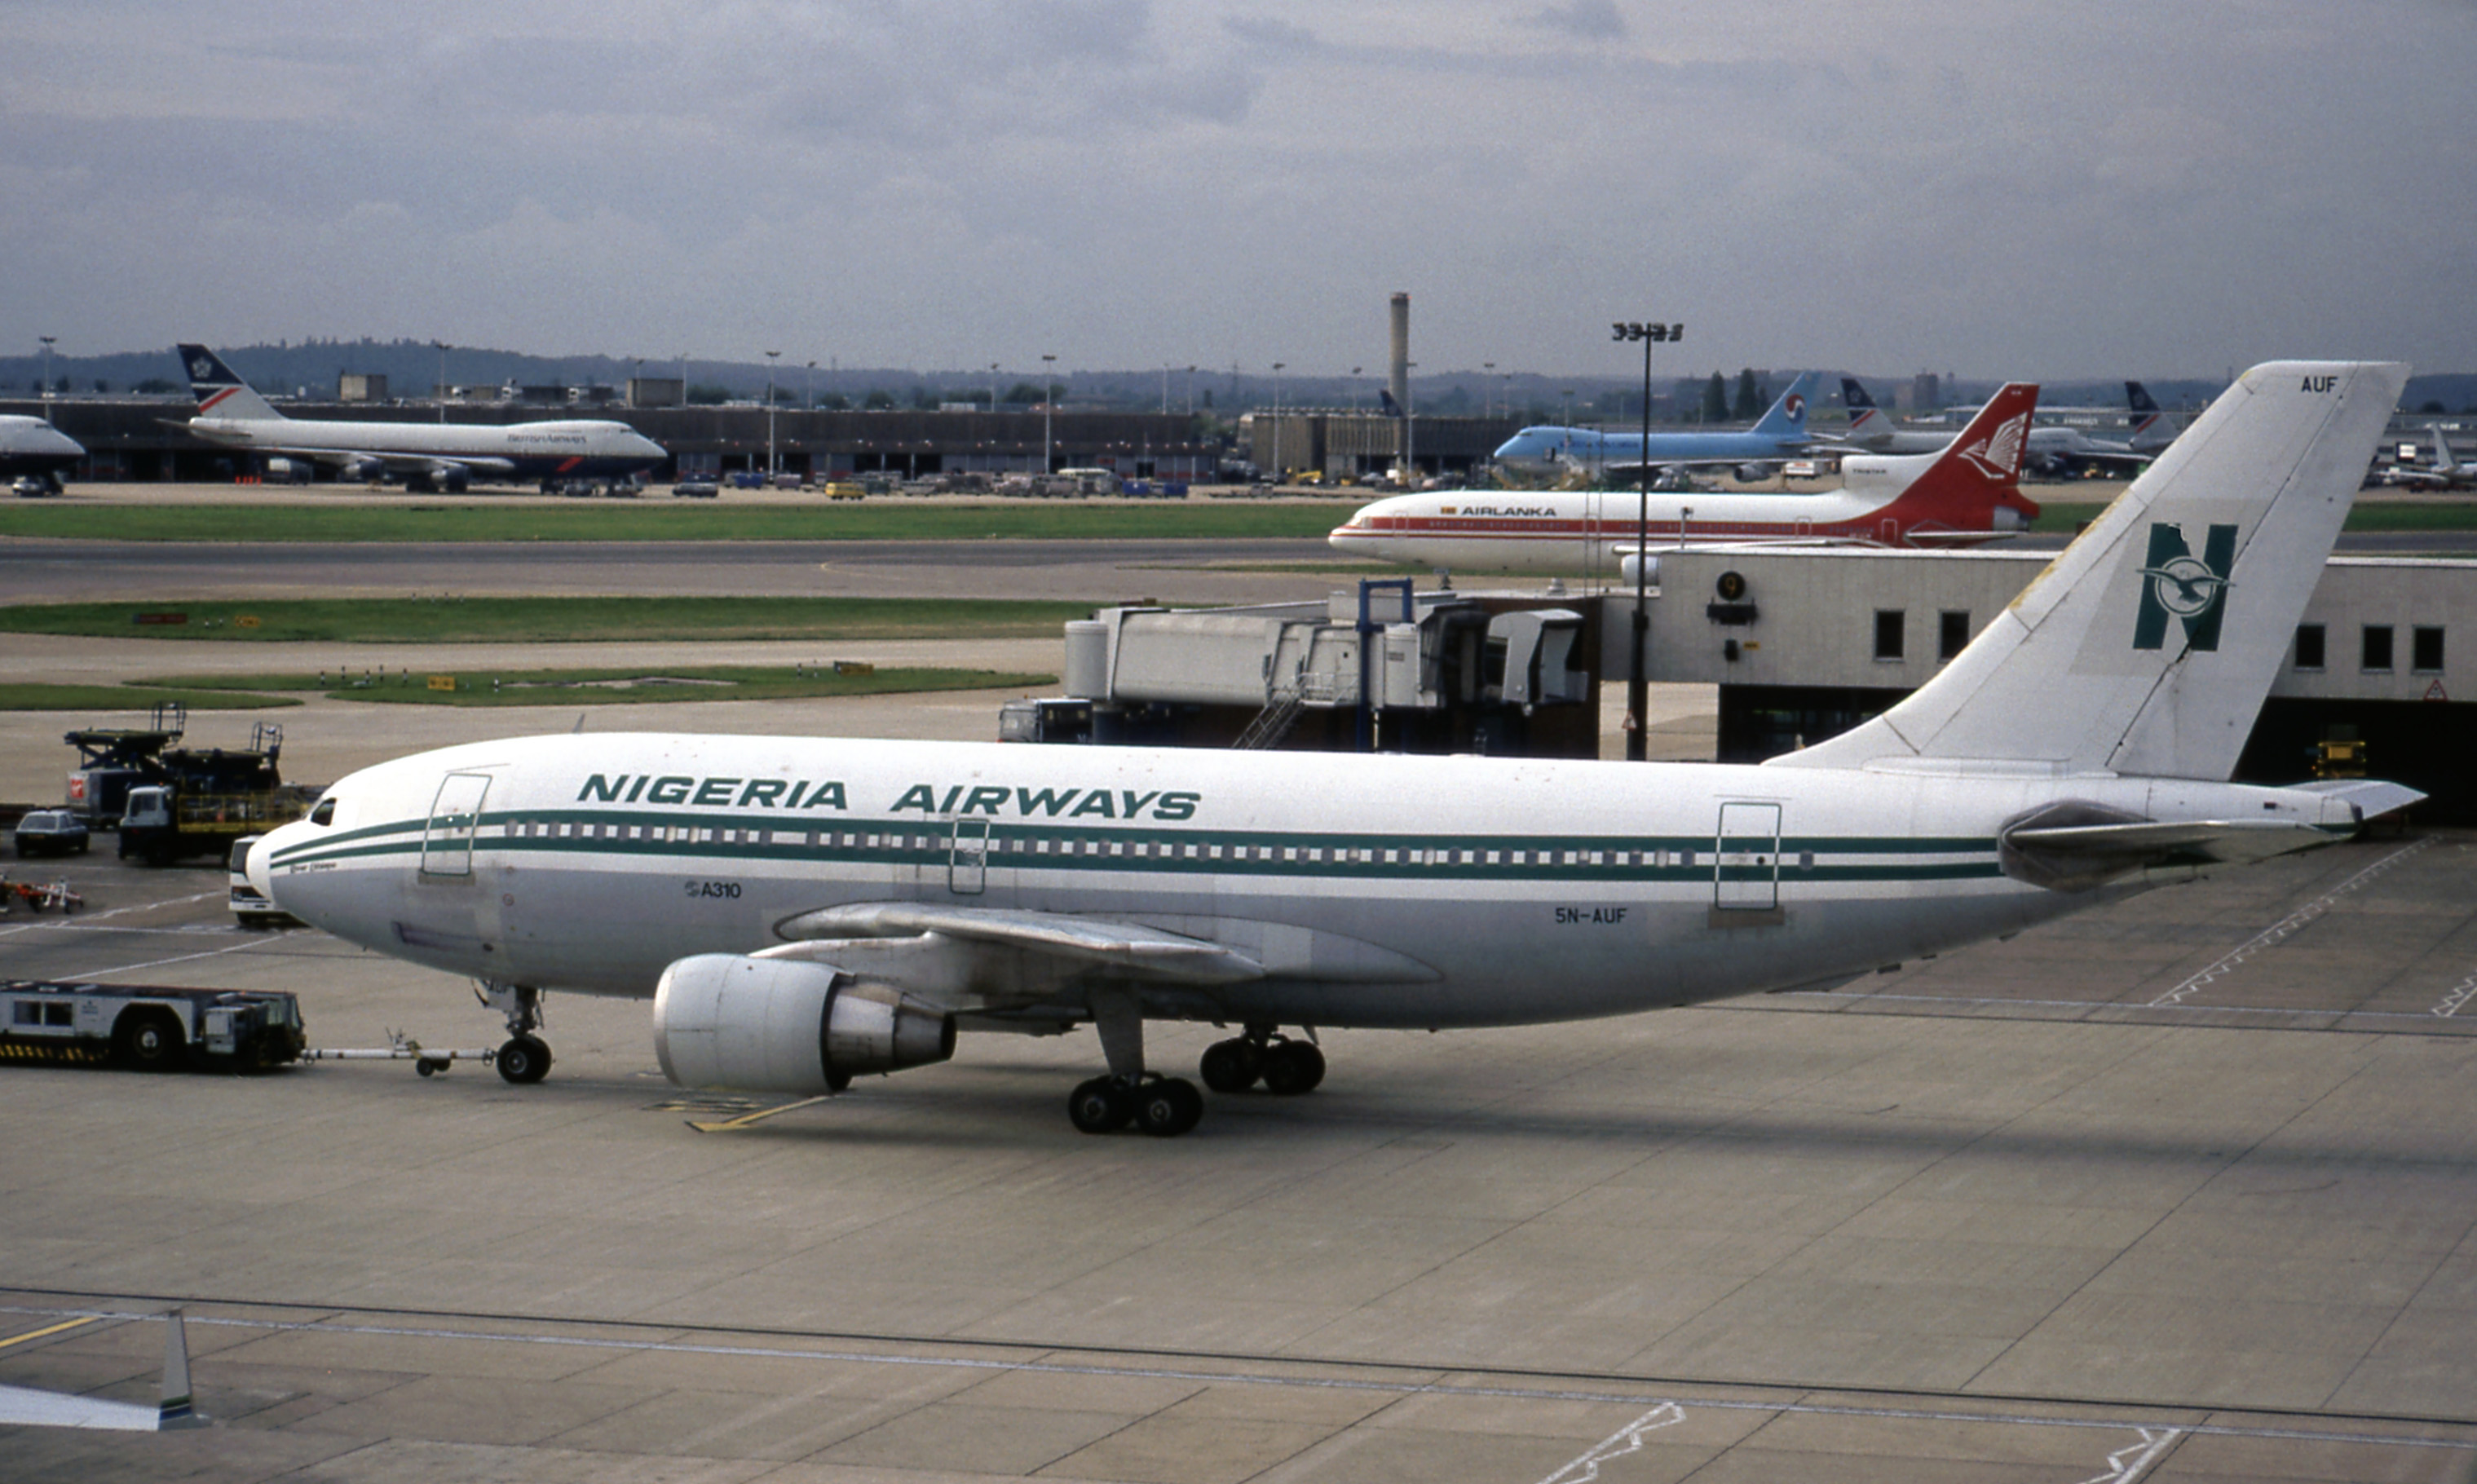 5N-AUF/5NAUF Nigeria Airways  Airbus A310 Airframe Information - AVSpotters.com